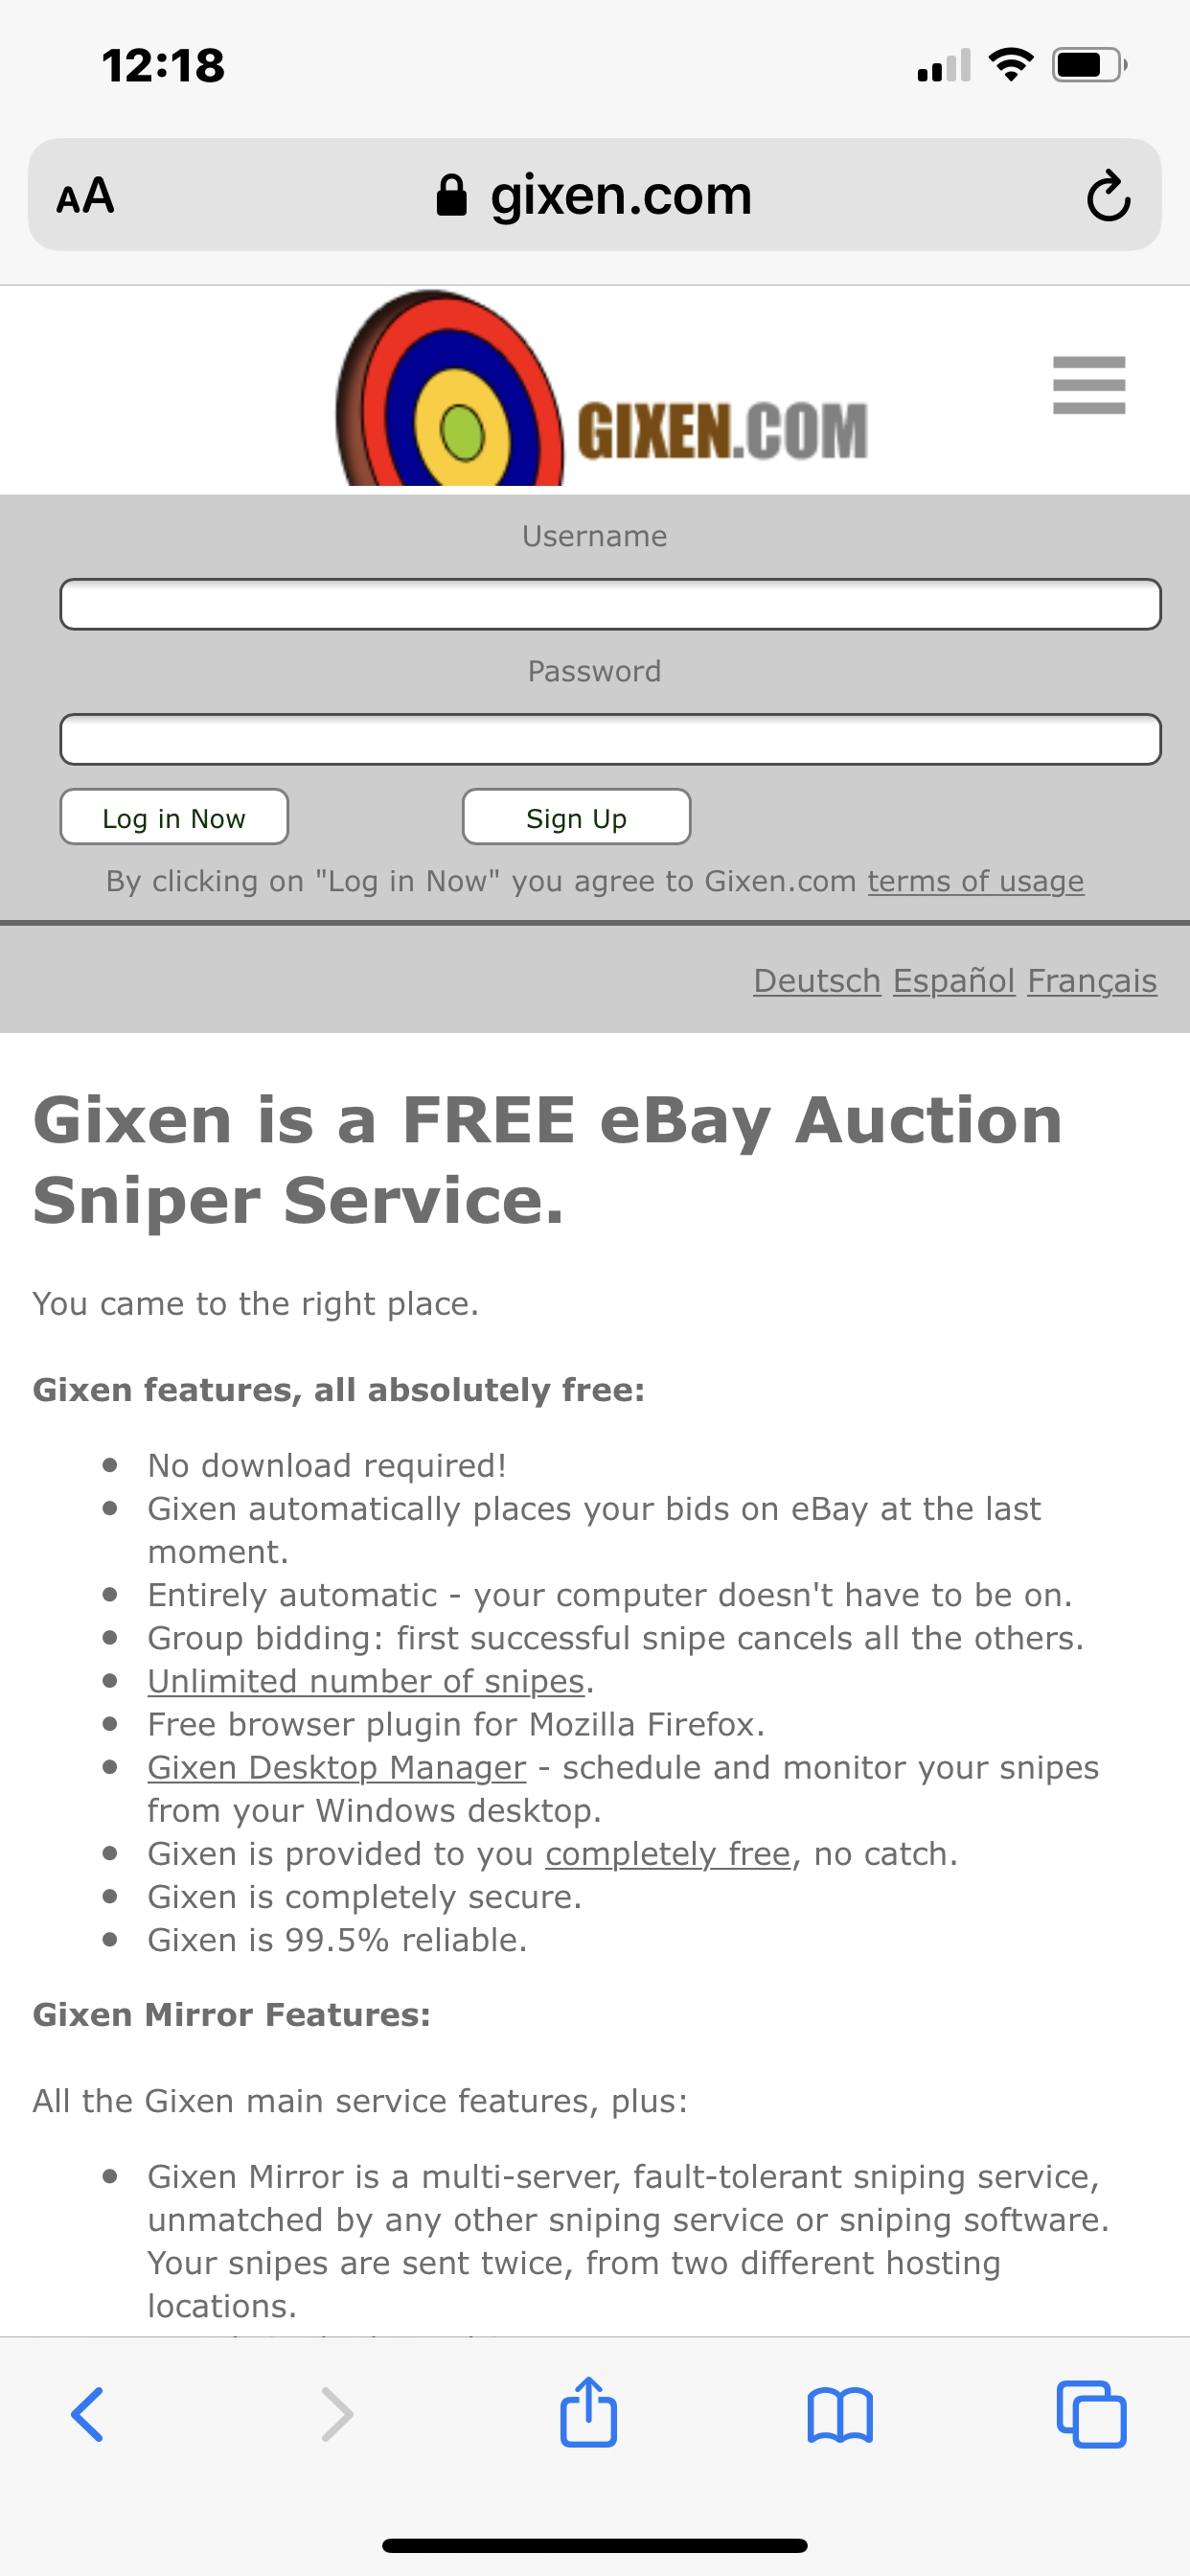 can you bid before gixen